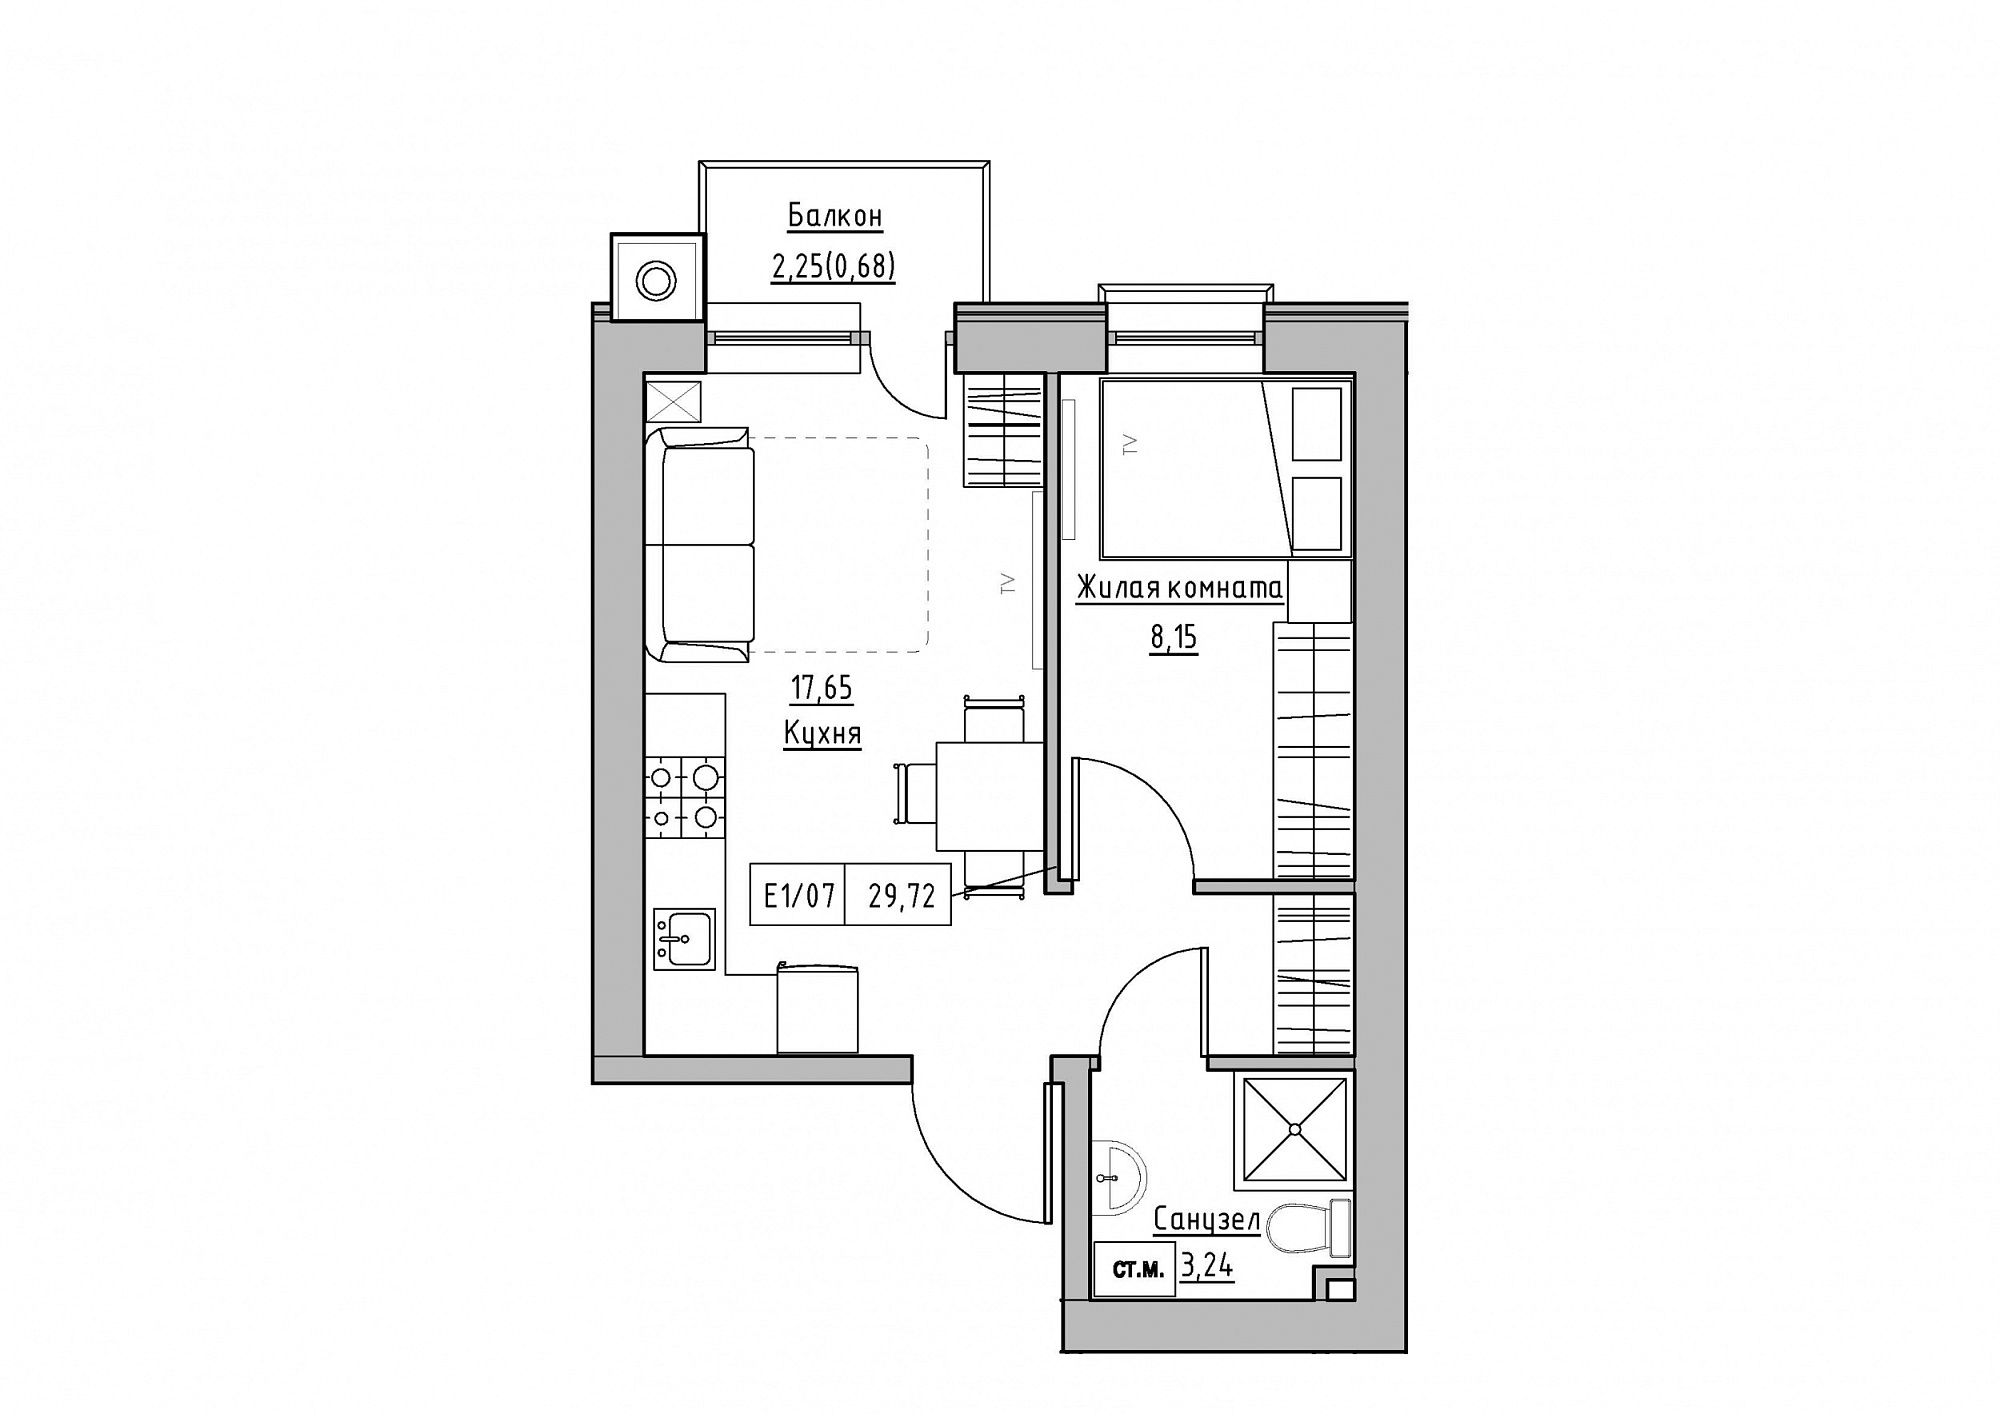 Планування 1-к квартира площею 29.72м2, KS-012-03/0003.